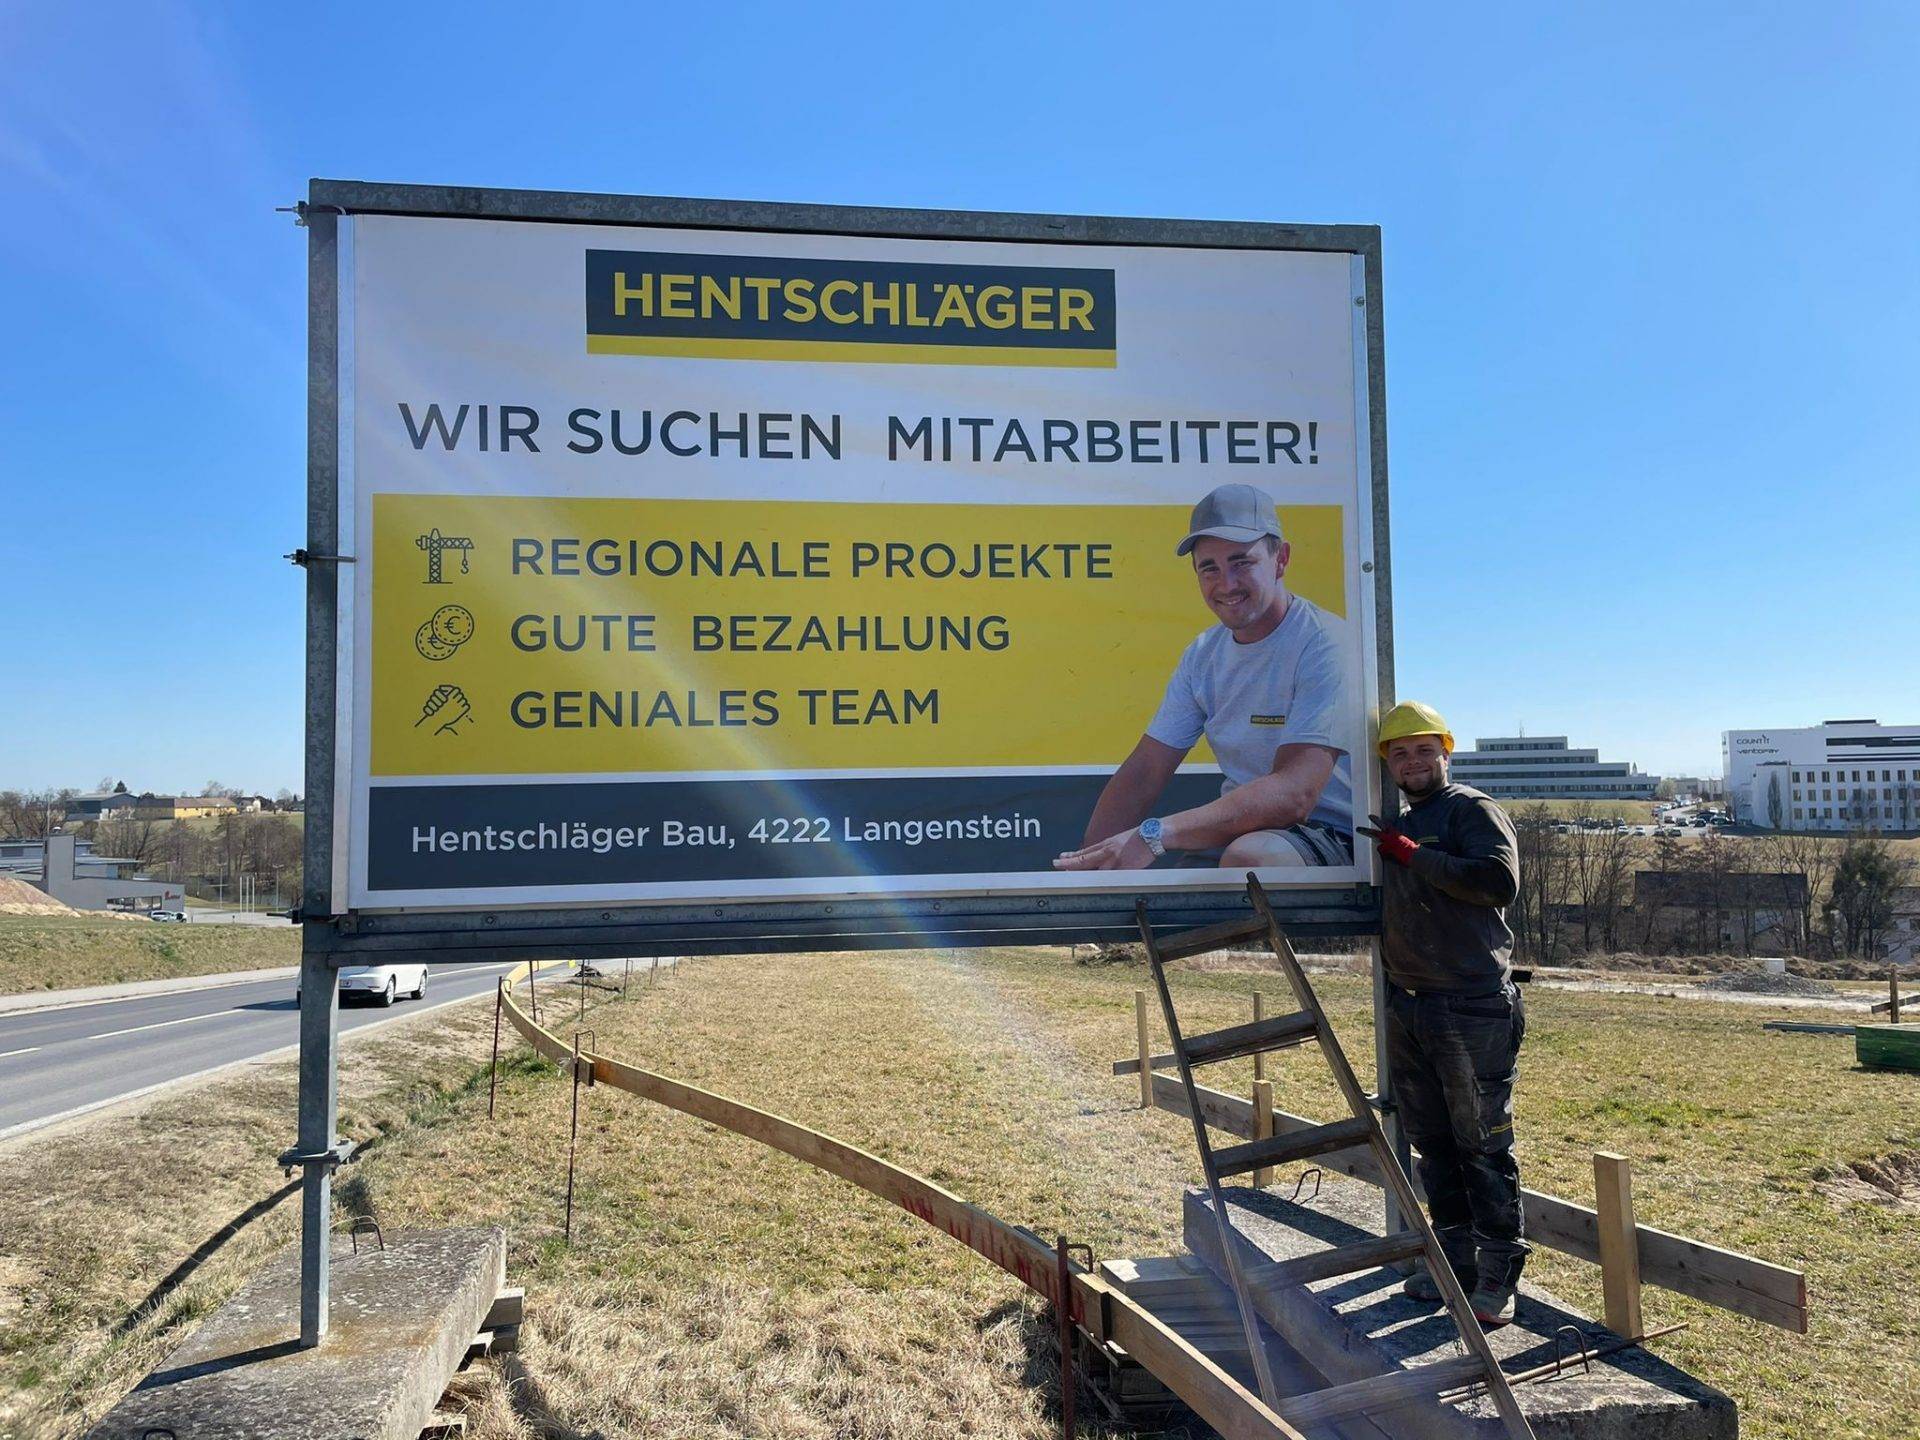 Hentschläger Jobs - Hentschläger Bau GmbH sucht Facharbeiter, Vorarbeiter und Turmdrehkranfahrer